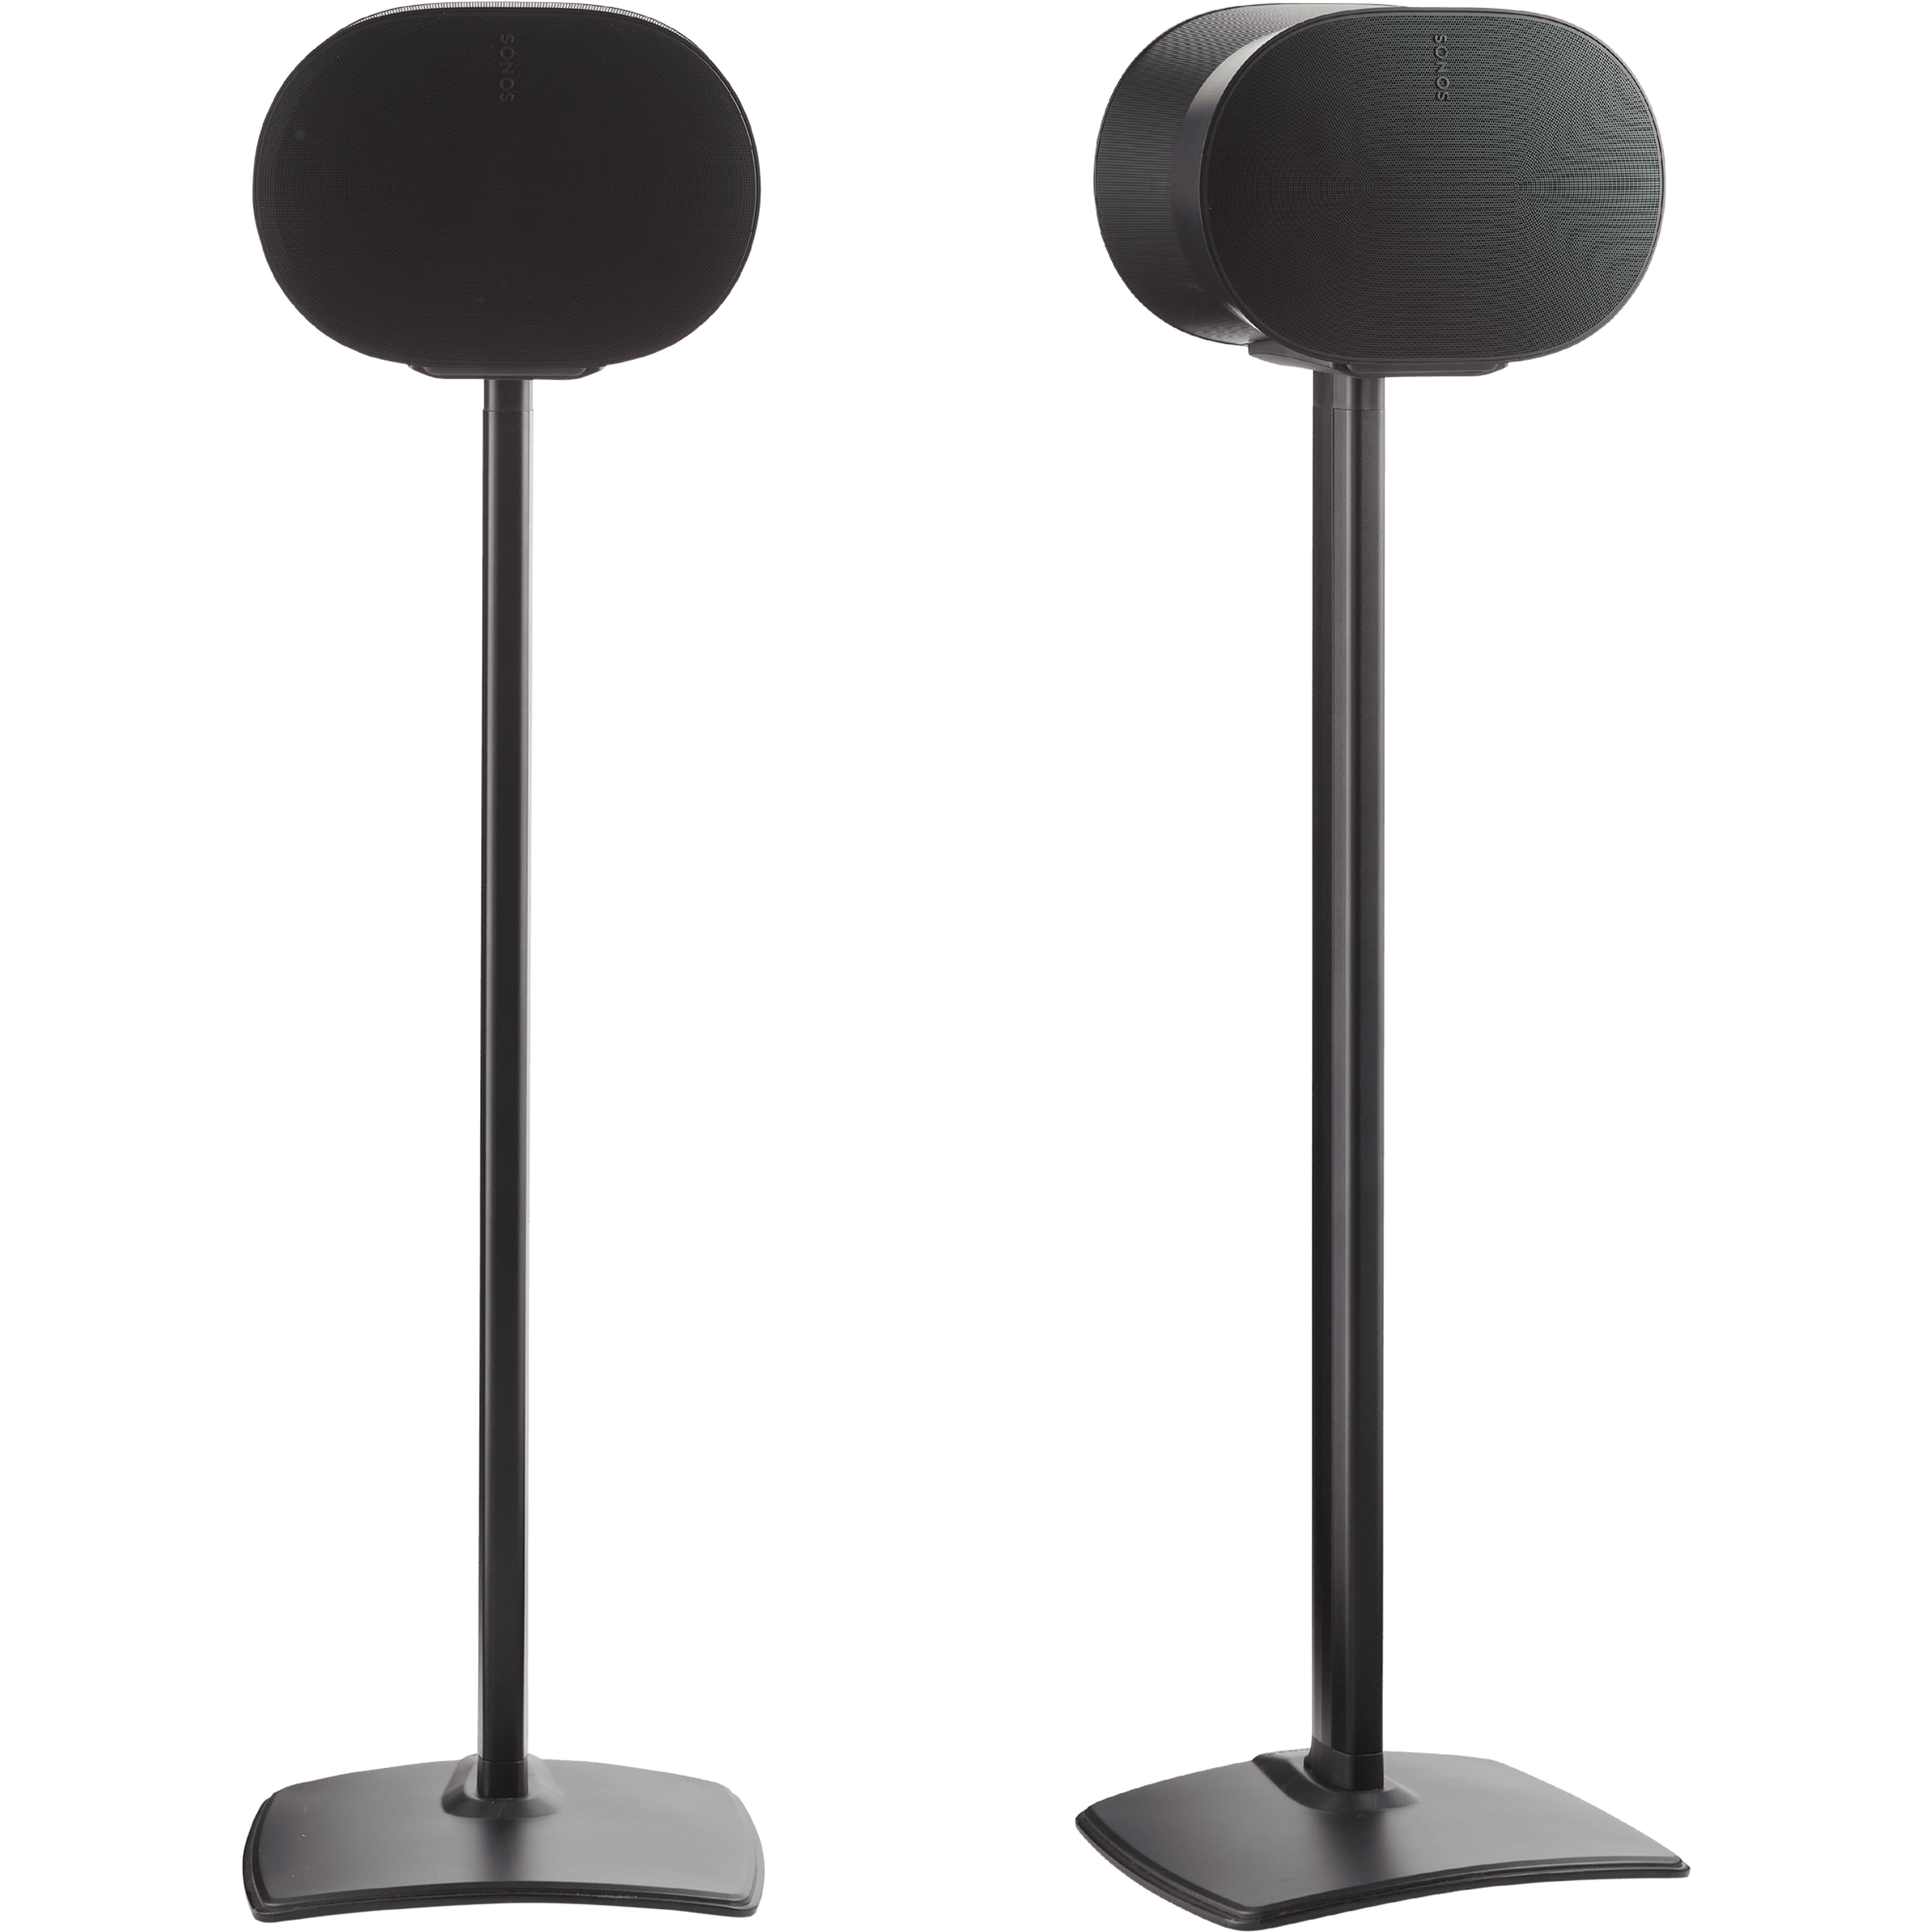 Afbeelding van een set zwarte Sanus-standaarden met op elke standaard een zwarte Sonos Era 300-speaker